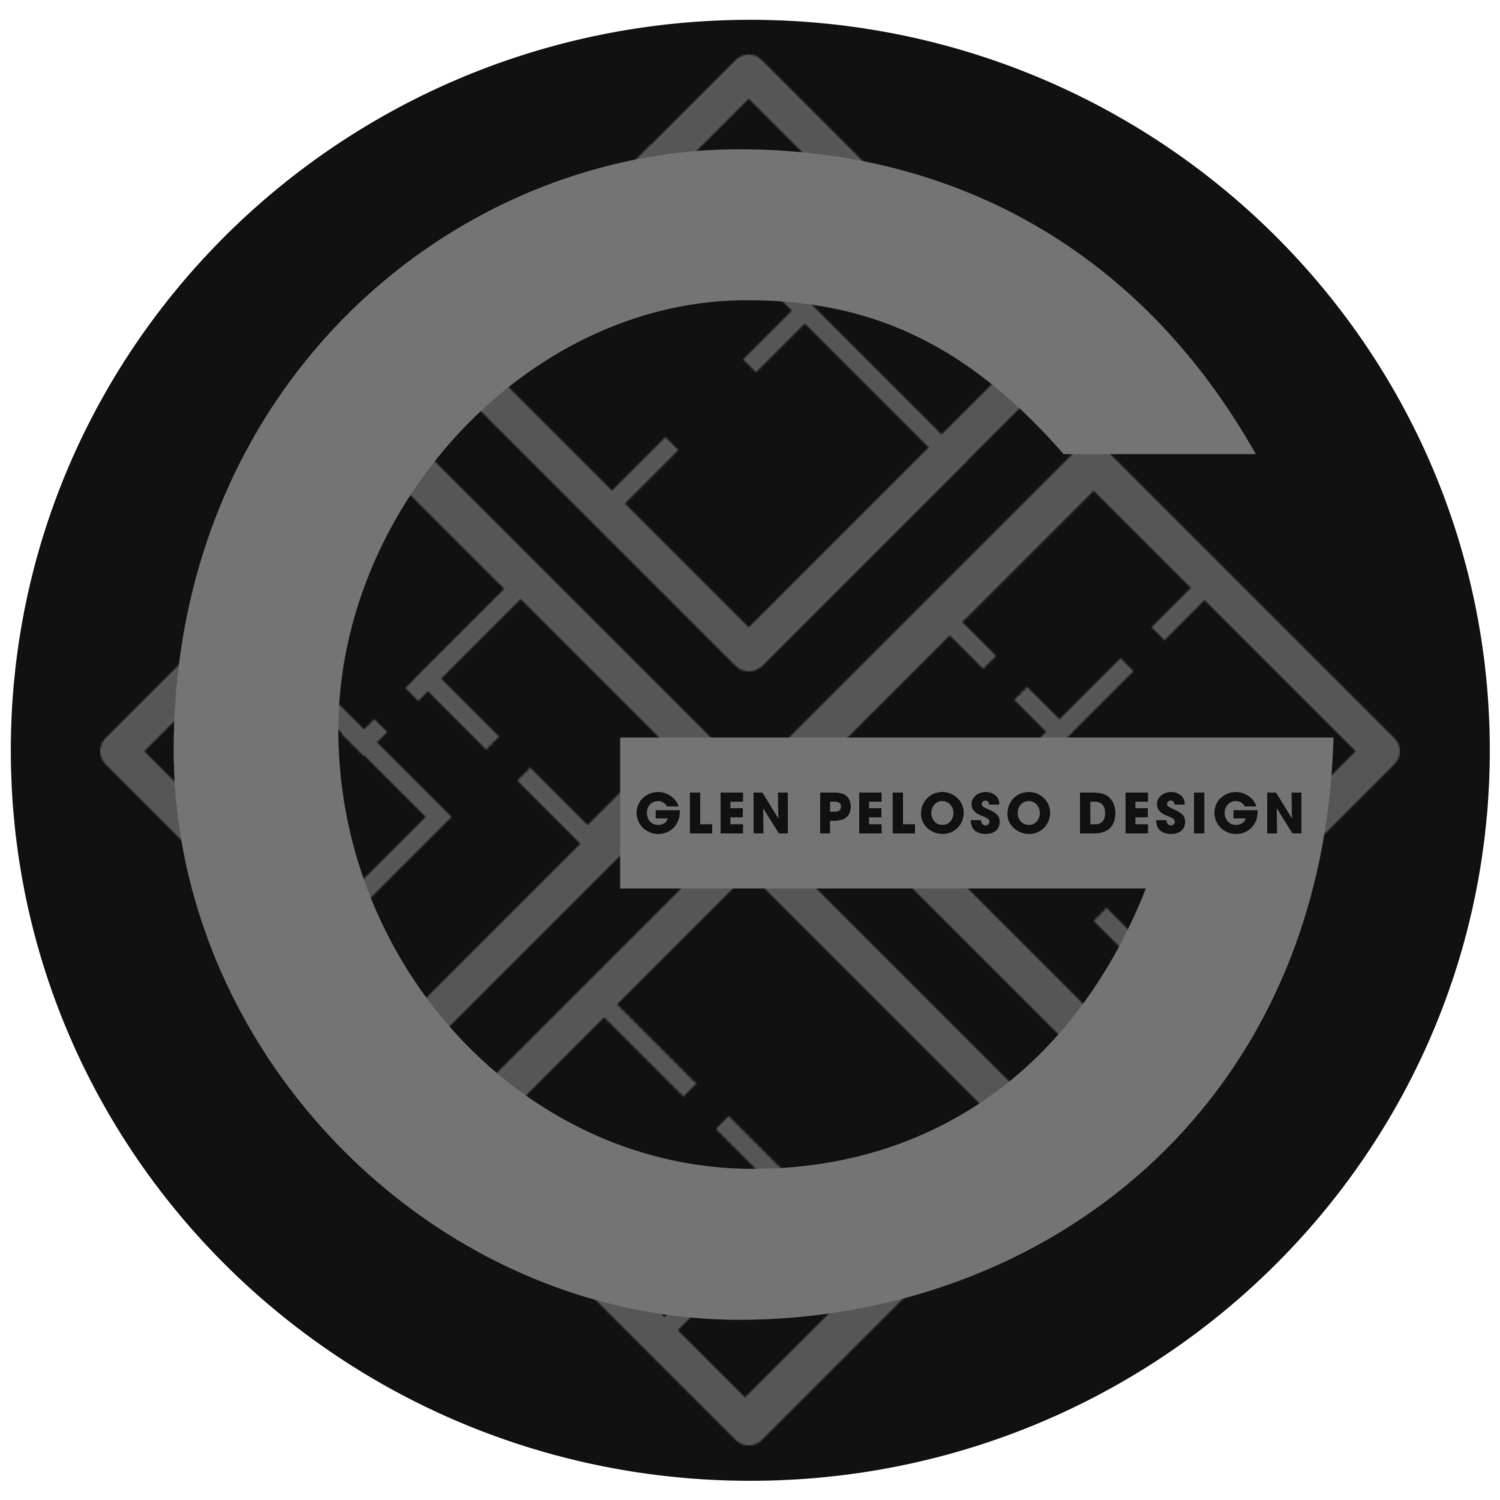 Glen Peloso Design